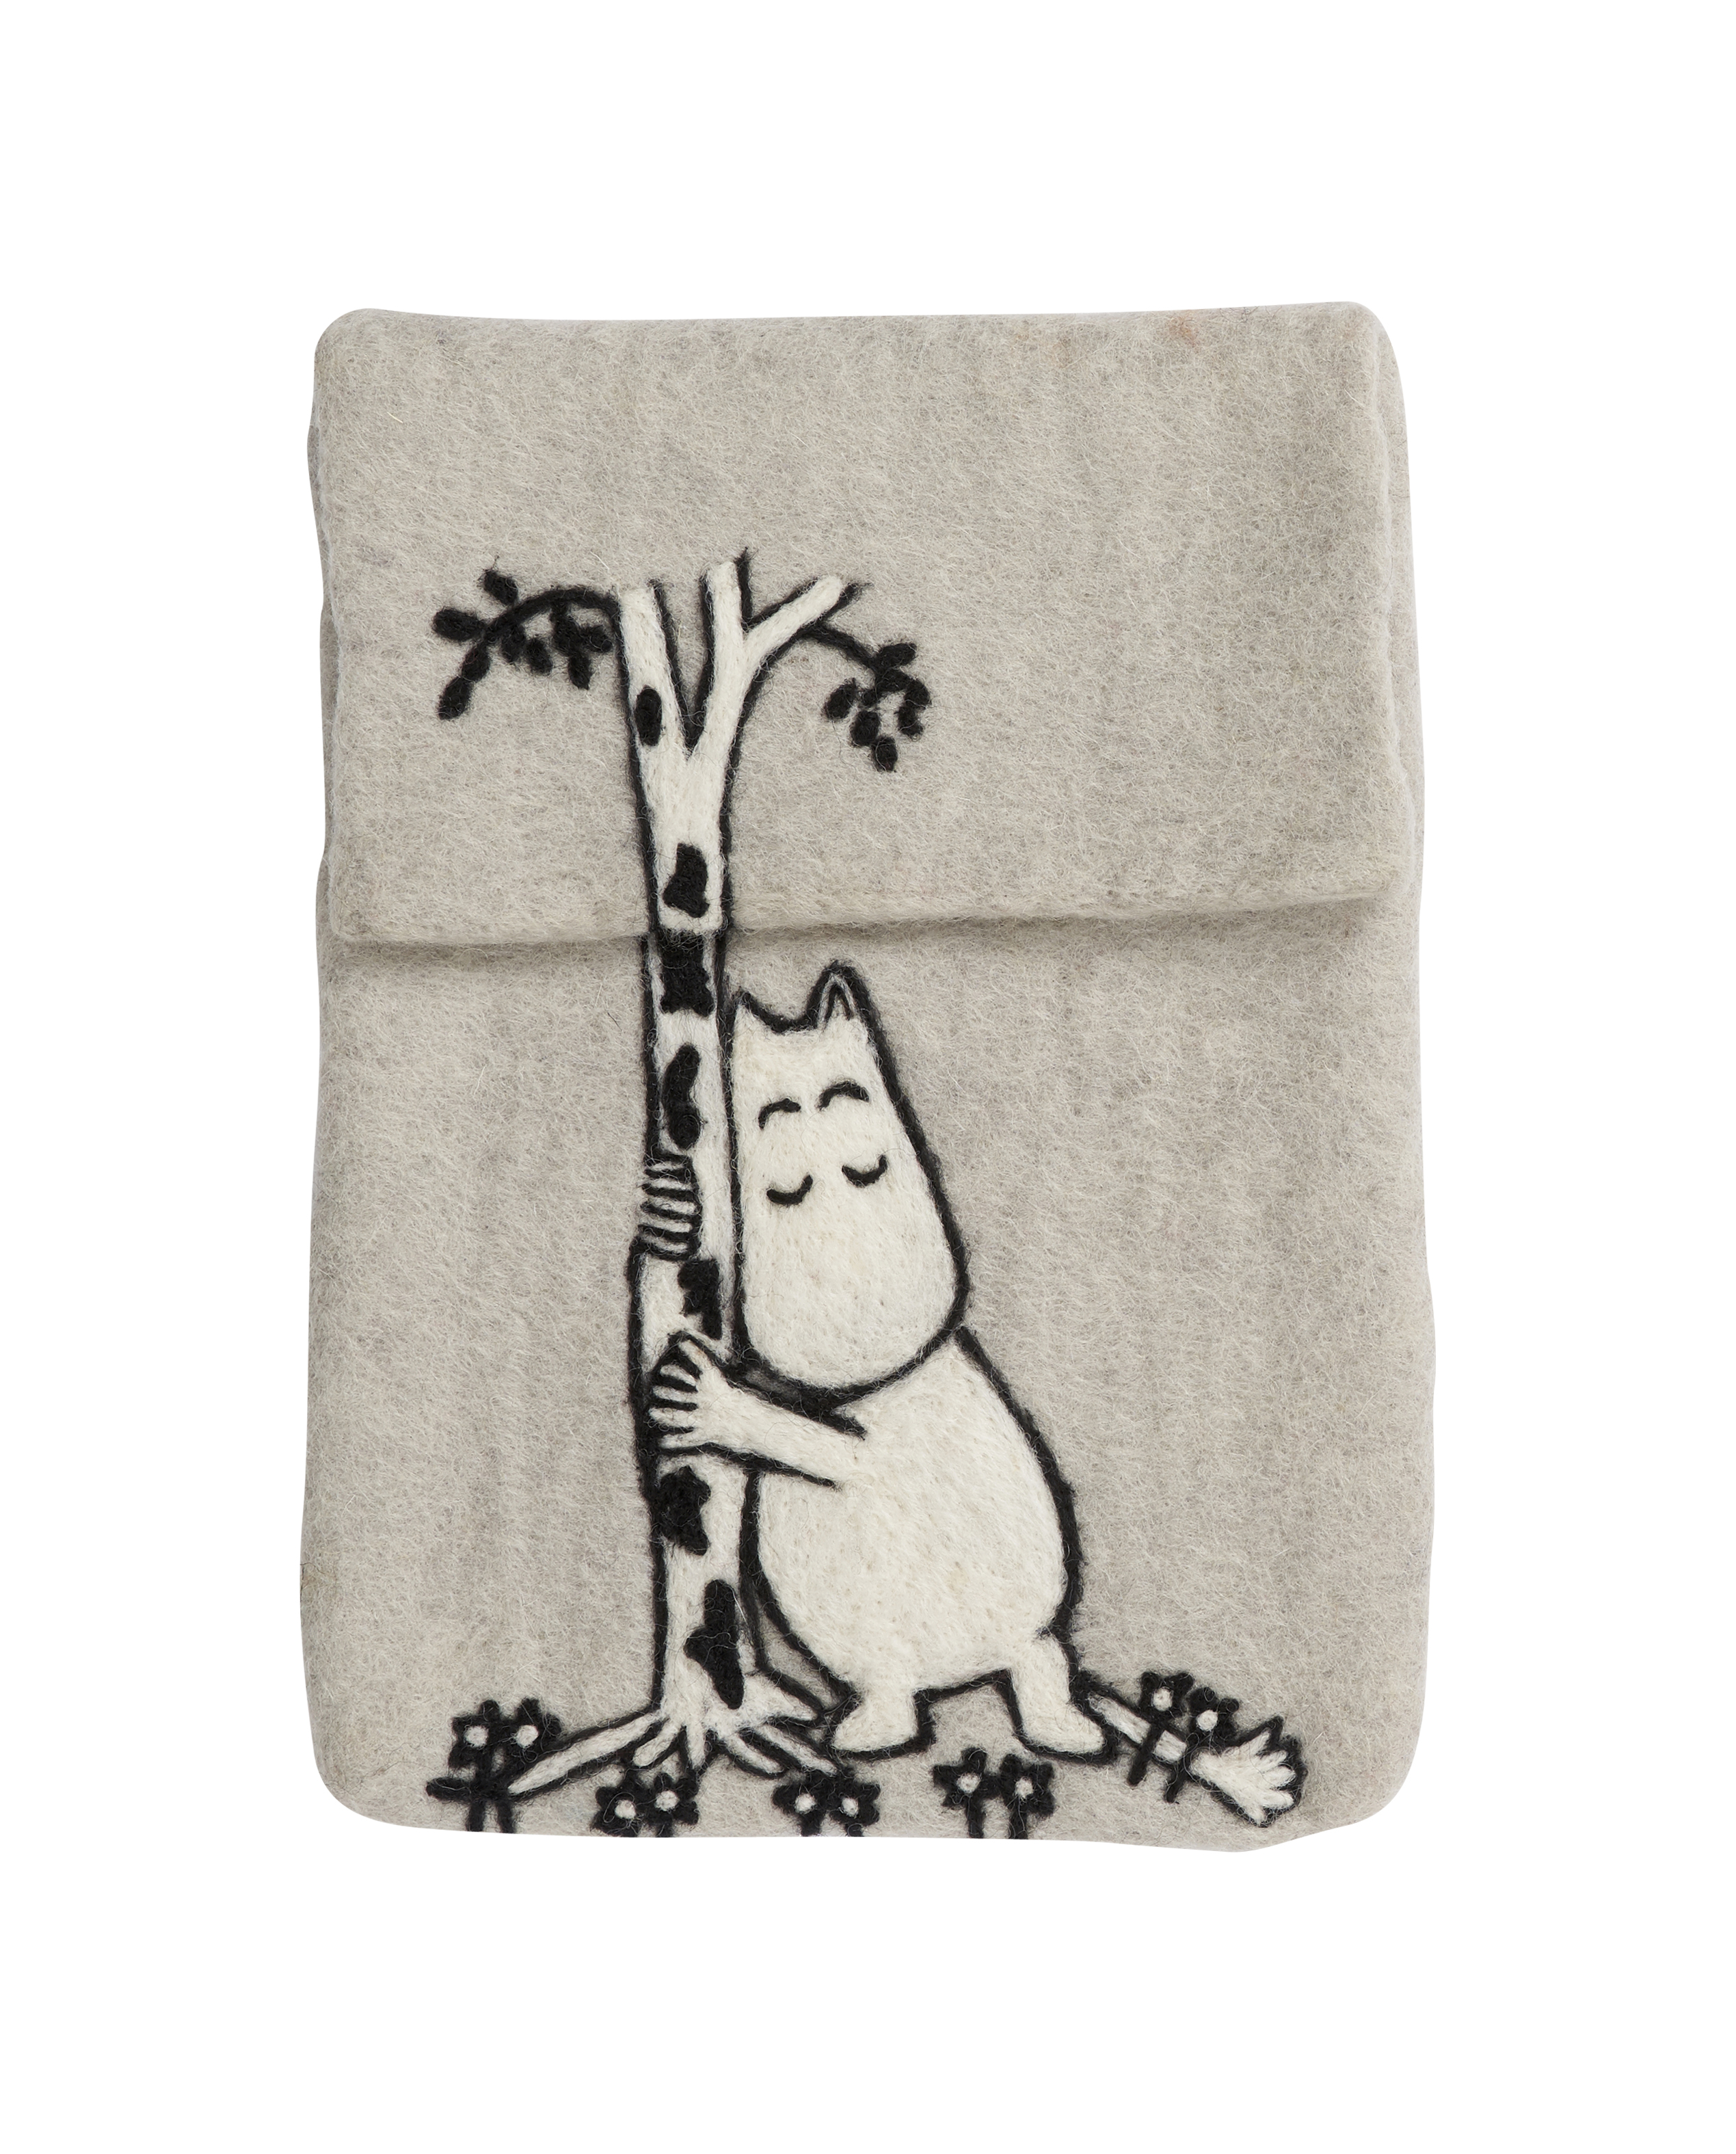 Klippan  Yllefabrik Moomin Tree Hug Felted iPad Cover